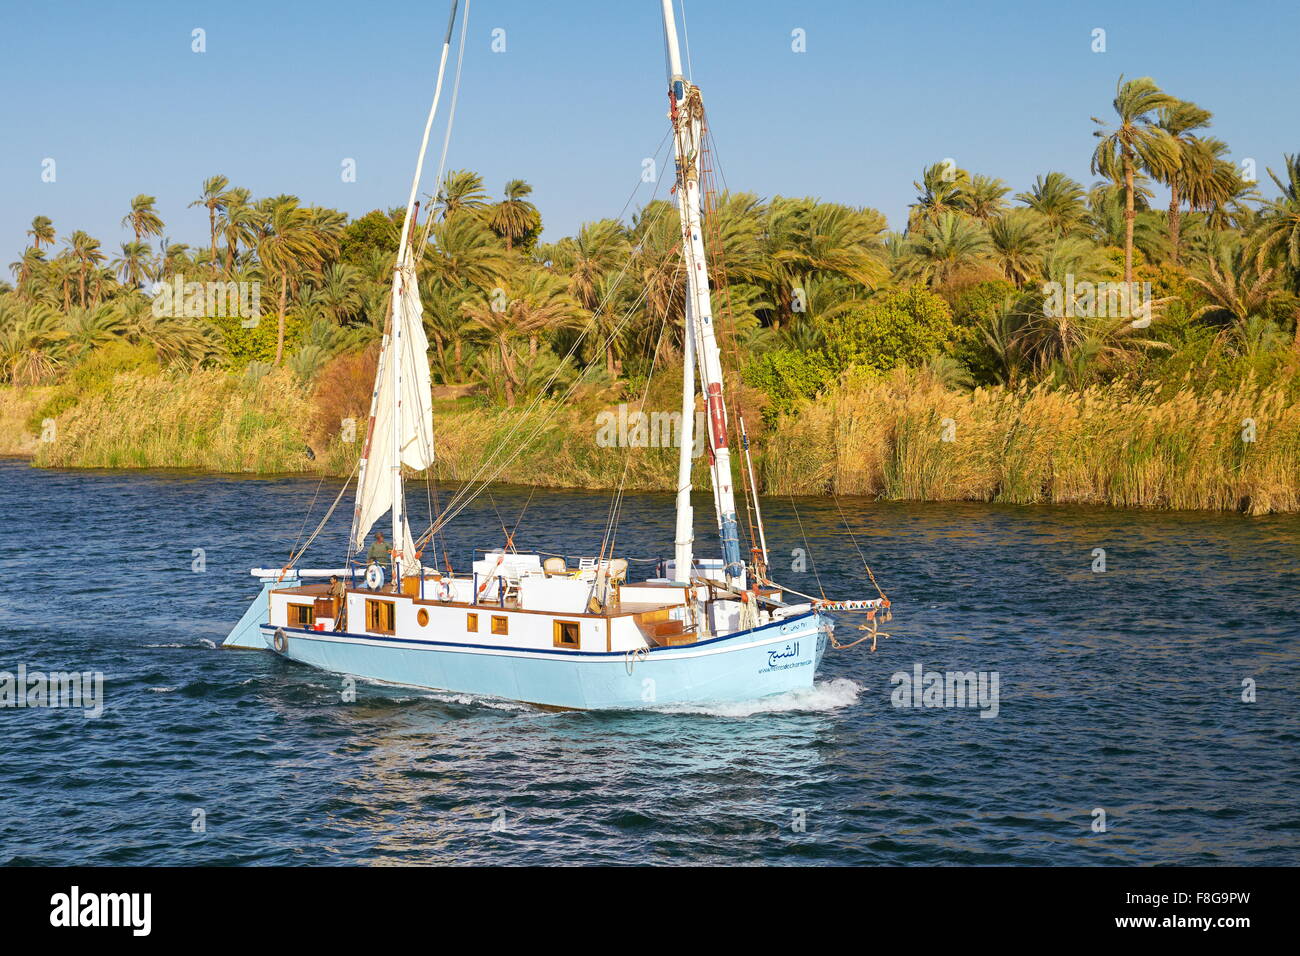 Égypte - bateau felouque sur le Nil, près de la vallée du Nil Assouan Banque D'Images